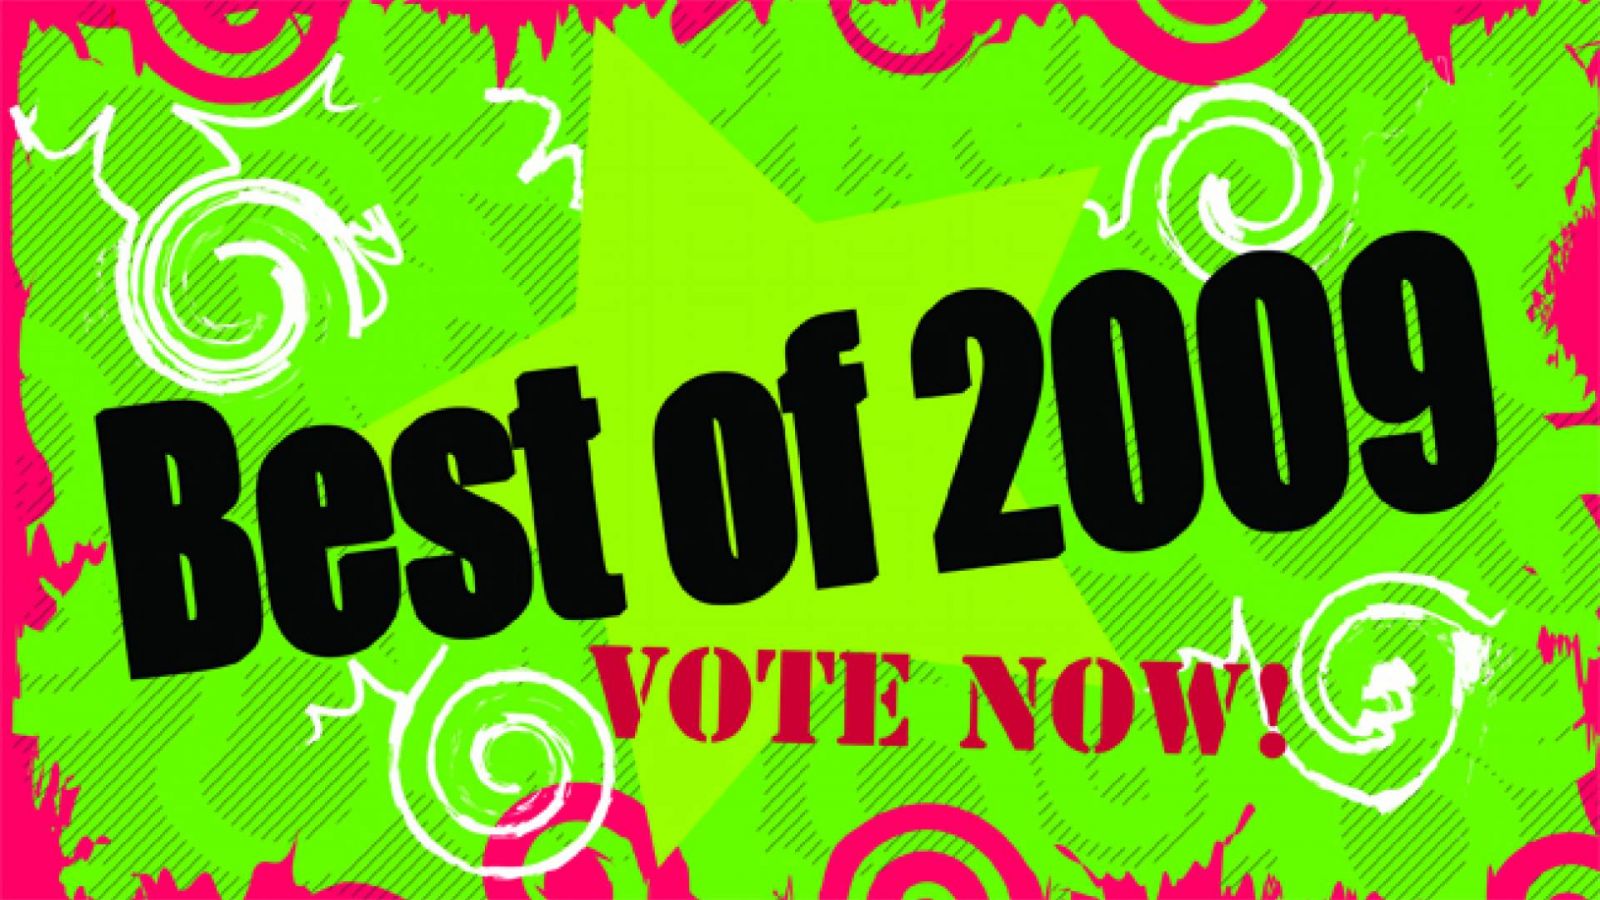 Лучшее 2009 года: голосуем! (окончено) © JaME - Kay